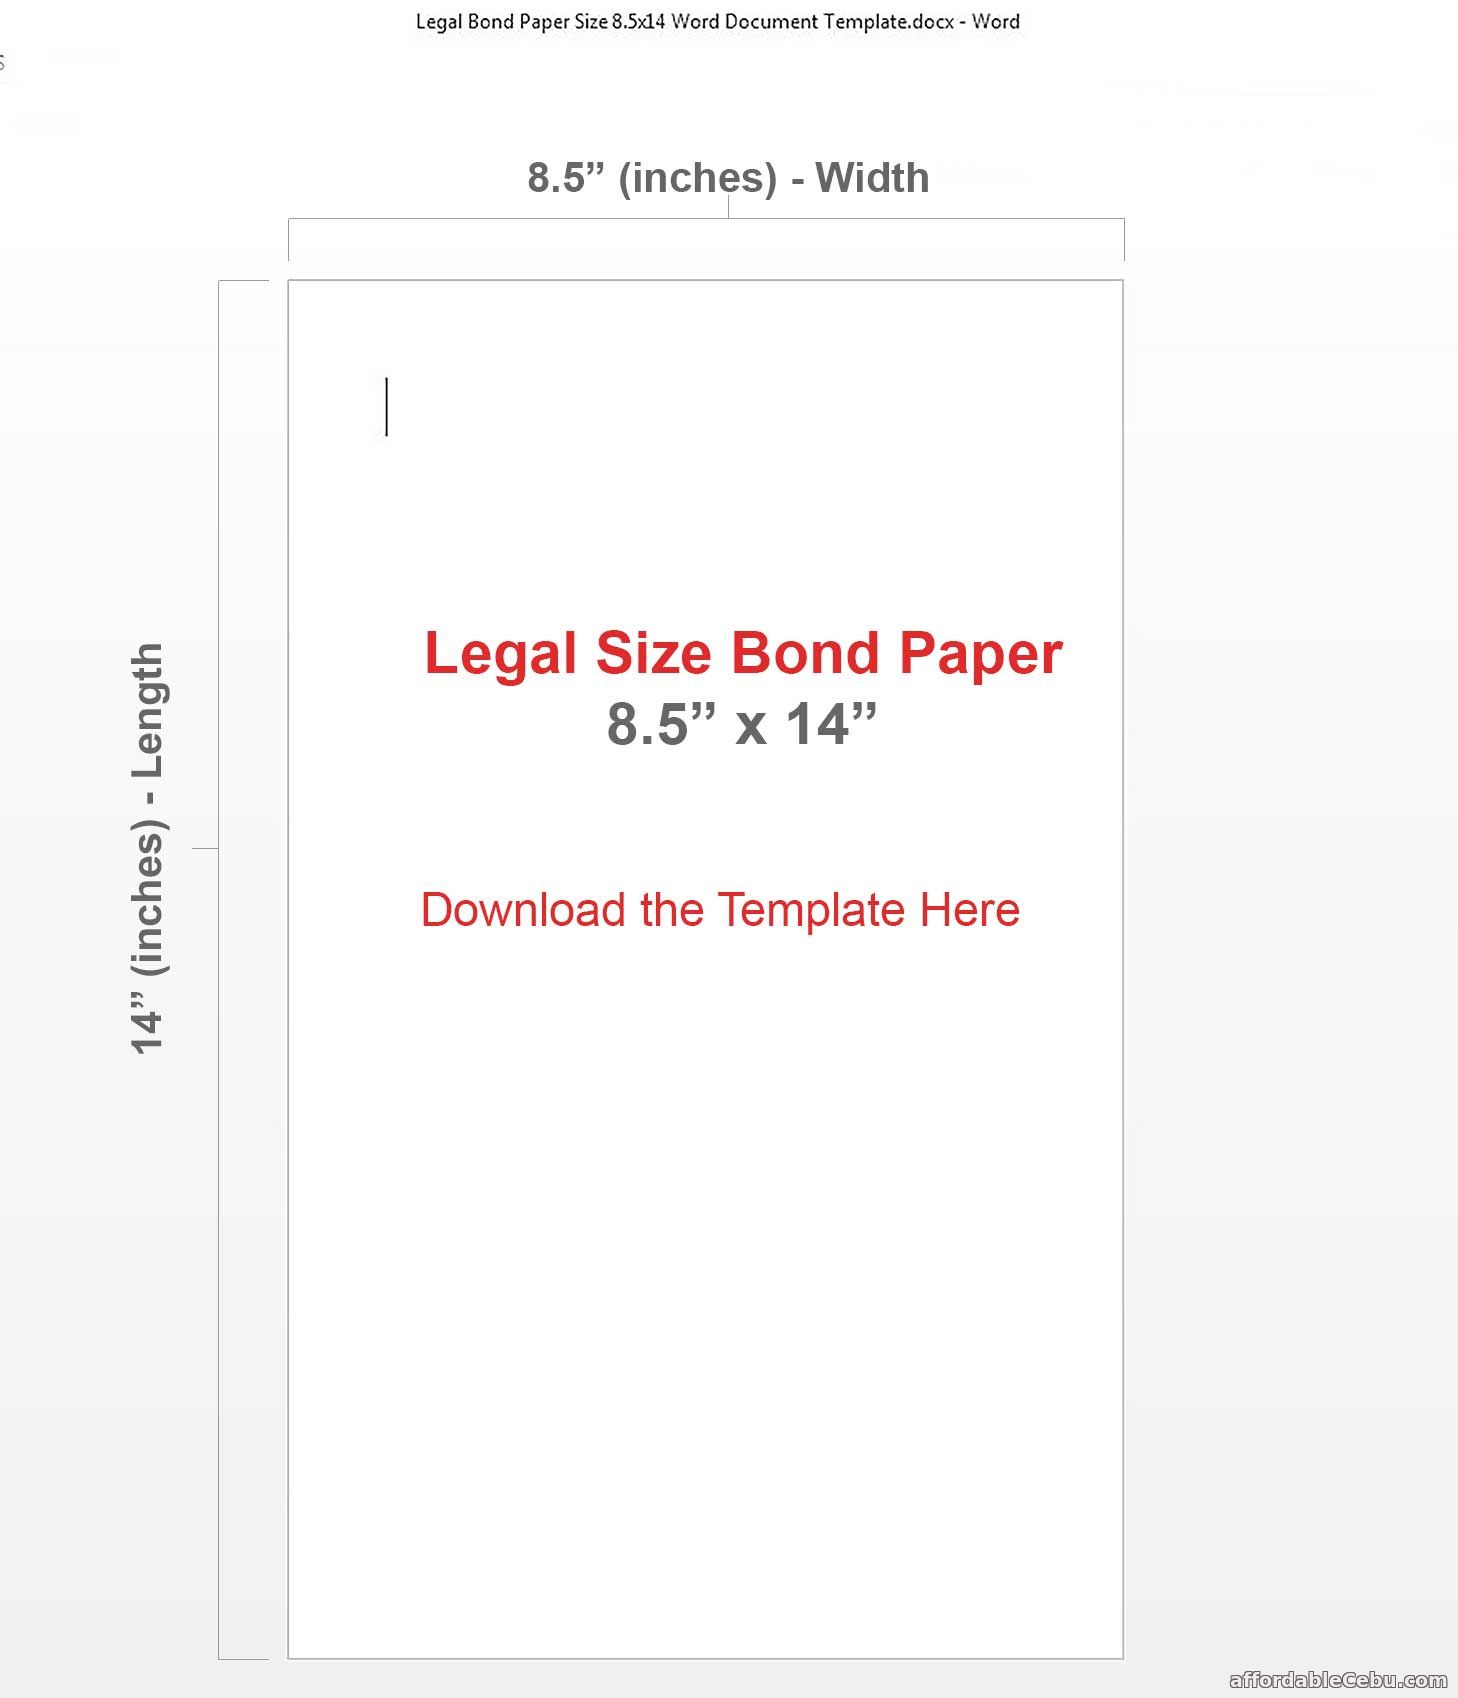 Legal Size Bond Paper 8.5 x 14